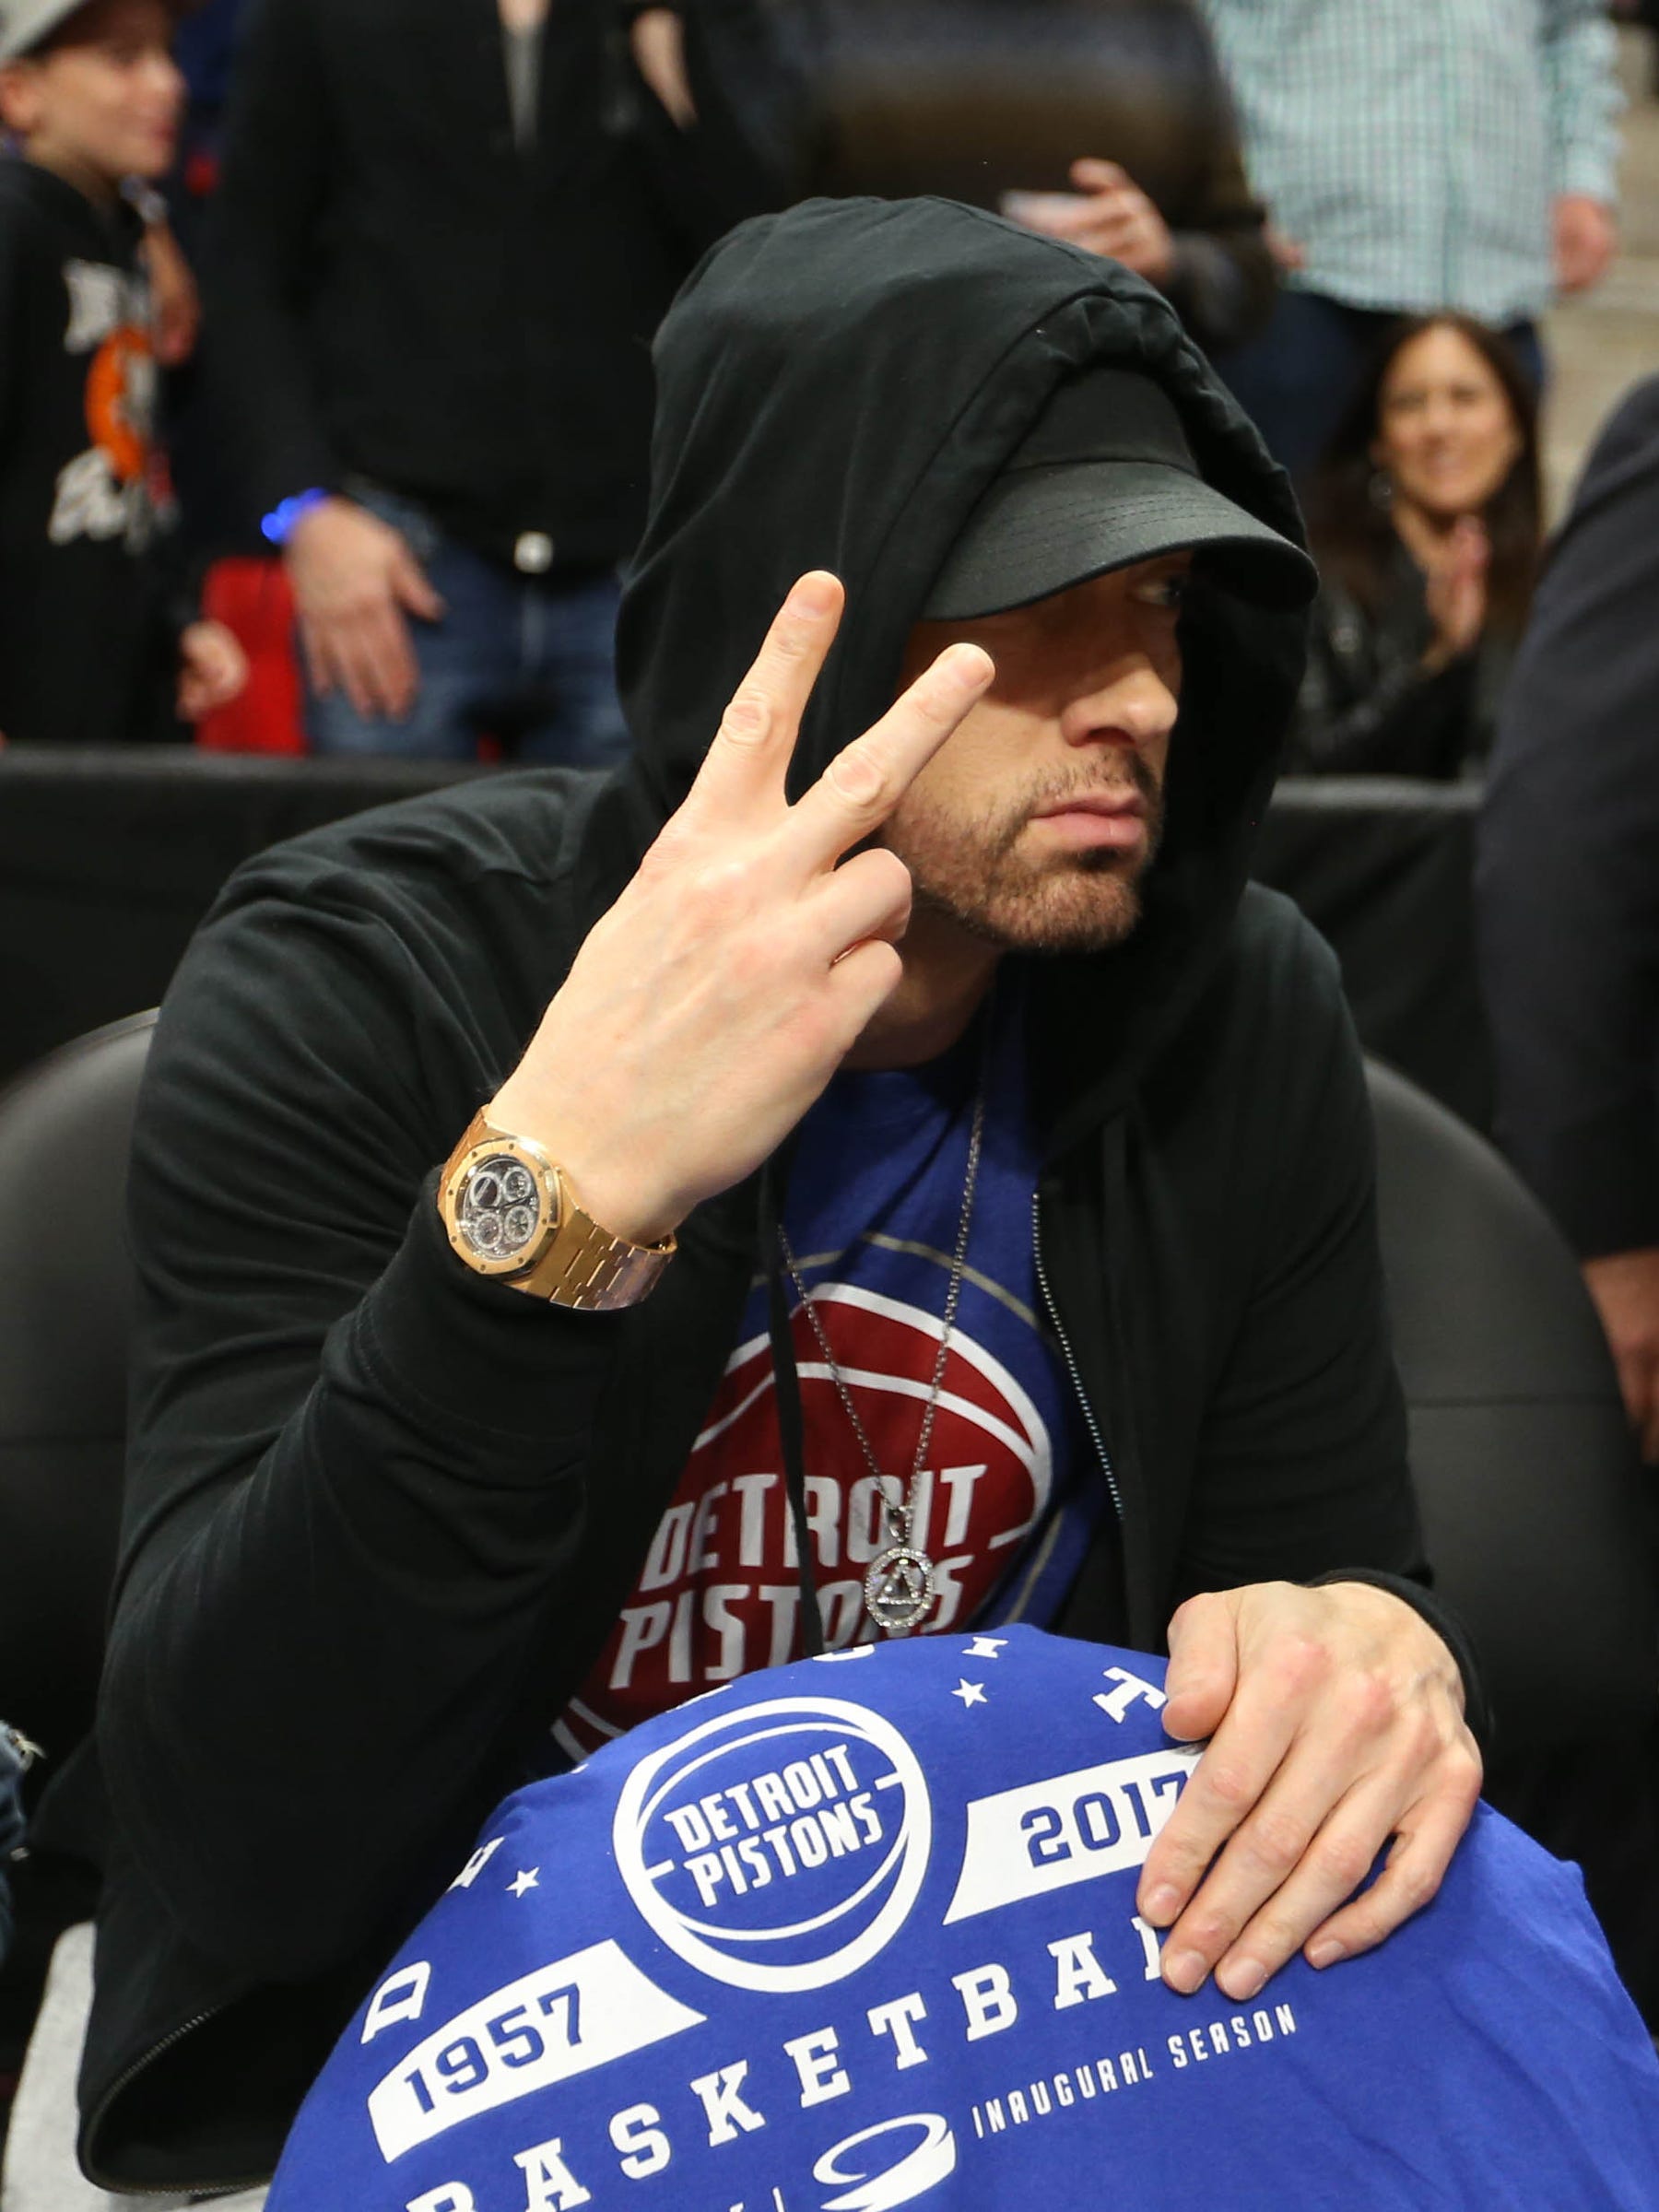 WickedWays on X: Eminem x Detroit Pistons Swingman Jersey